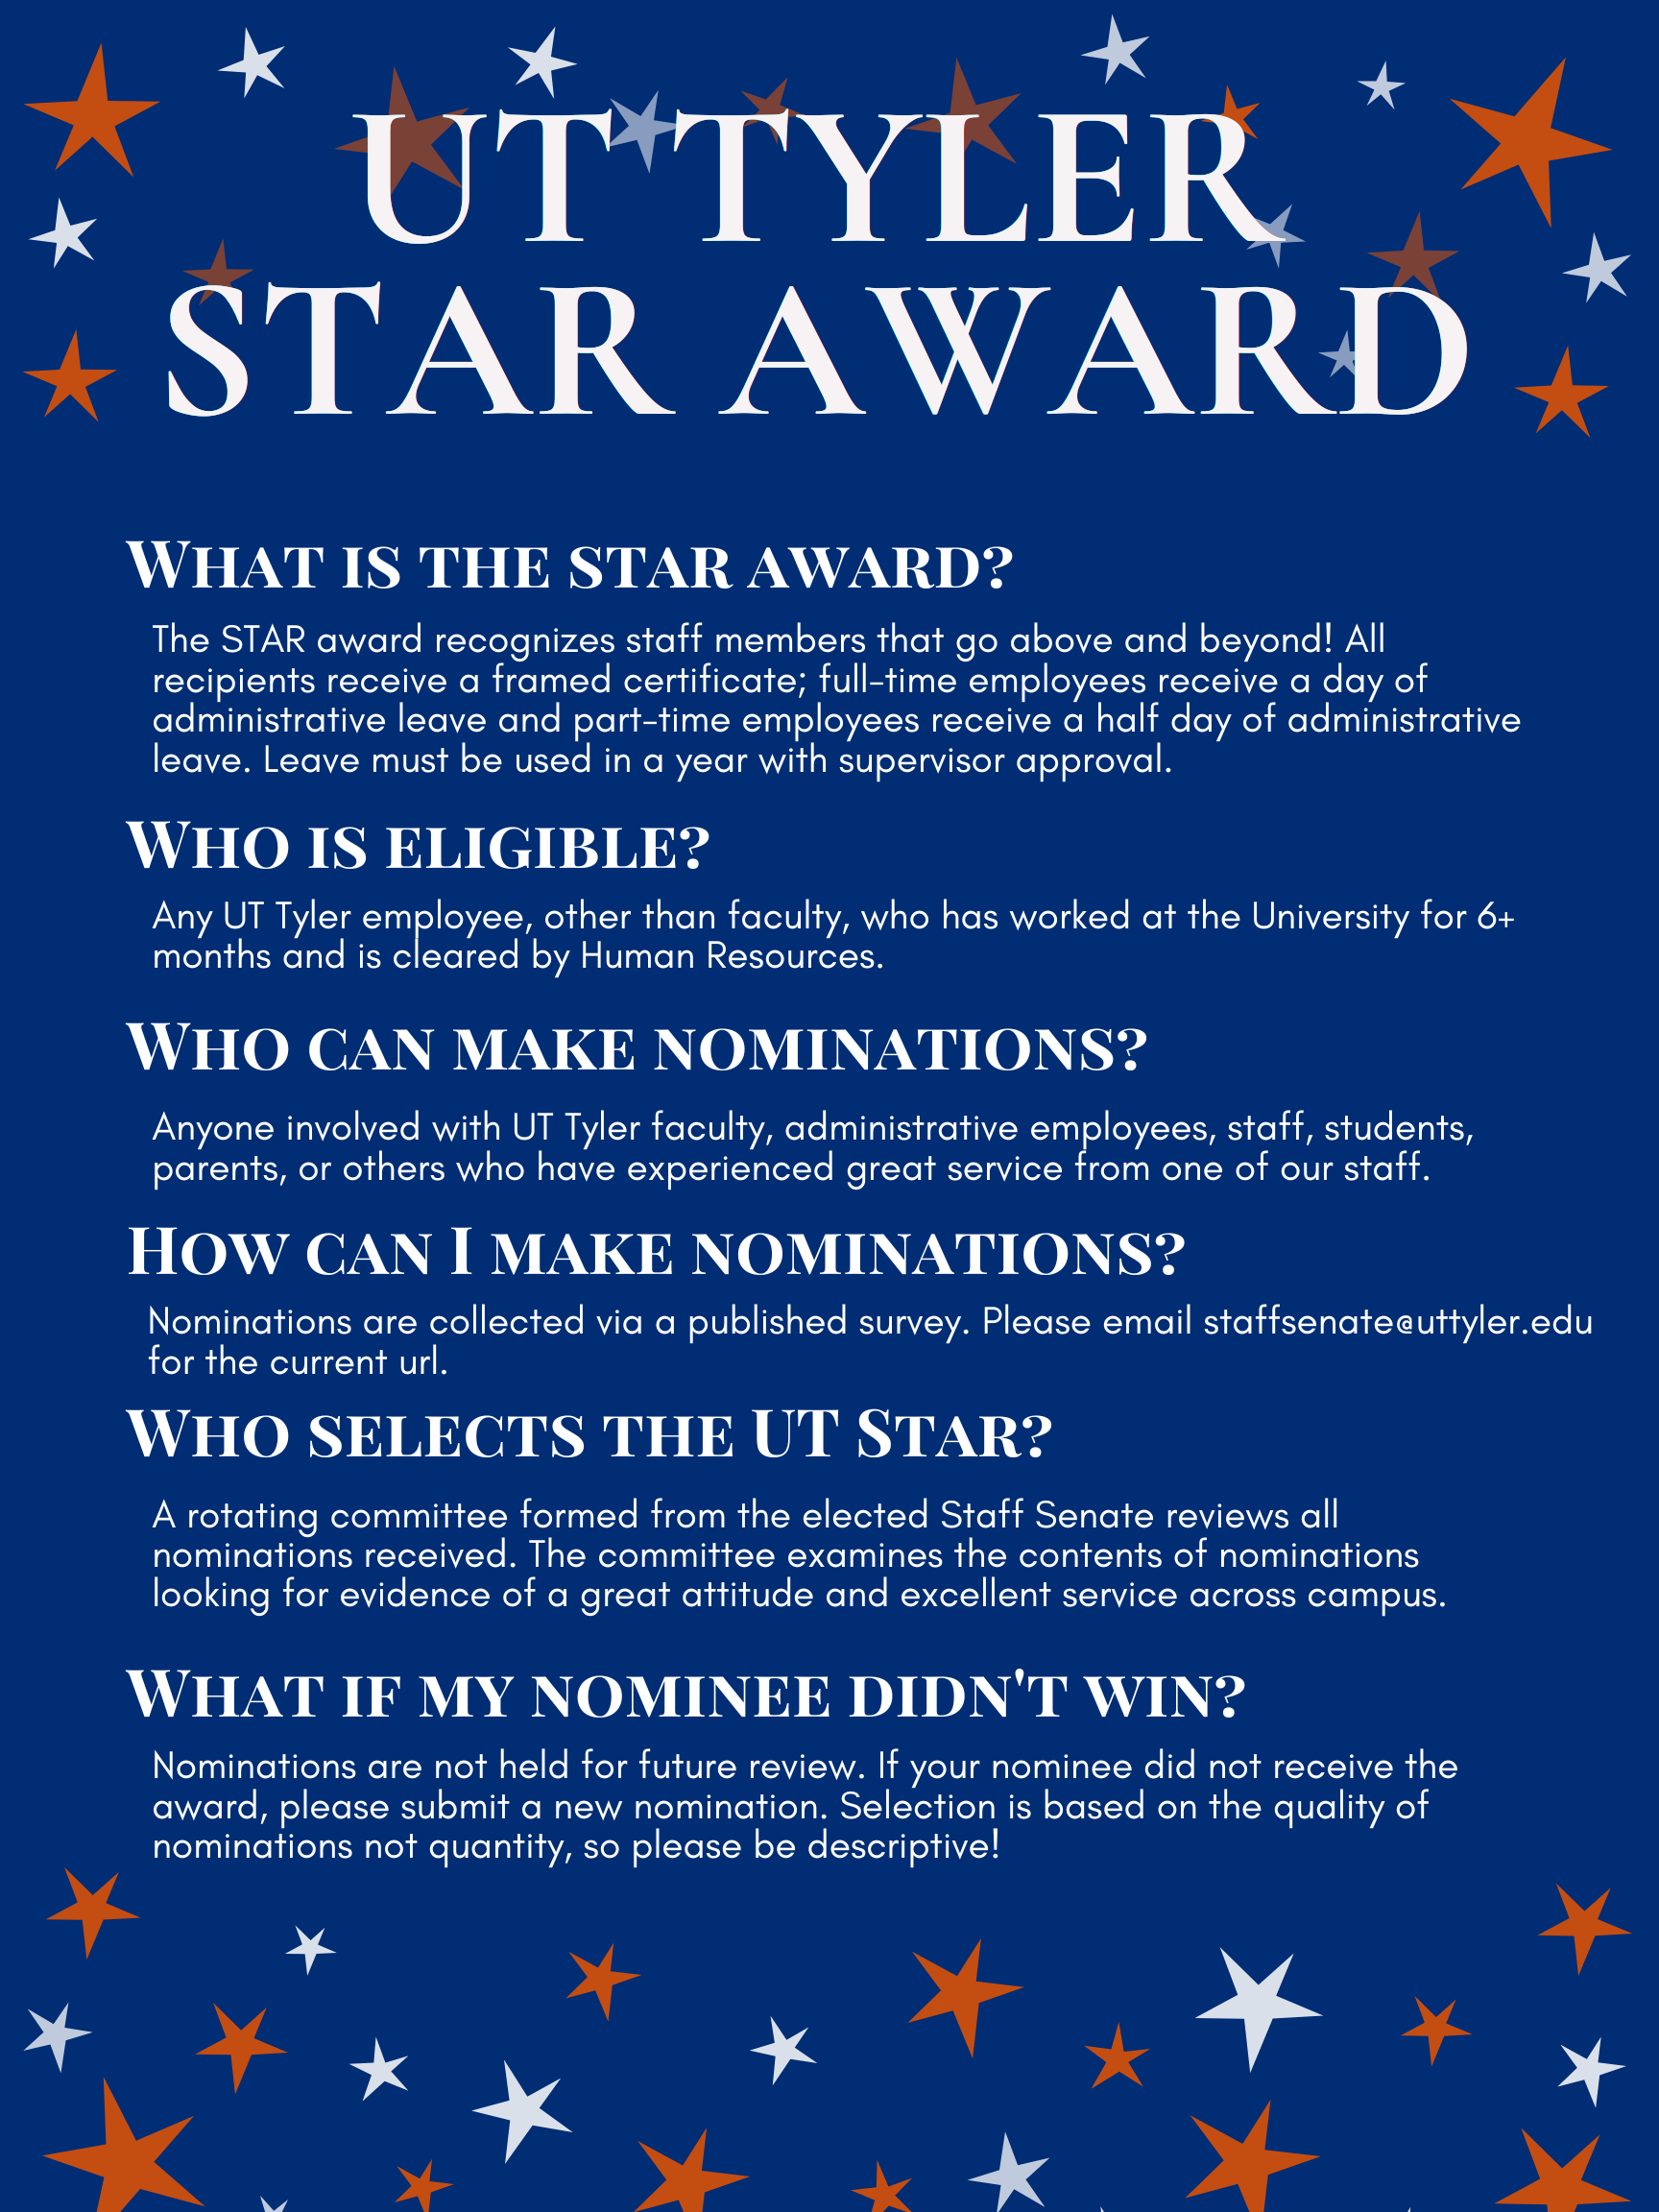 Email staffsenate@uttyler.edu for star award info